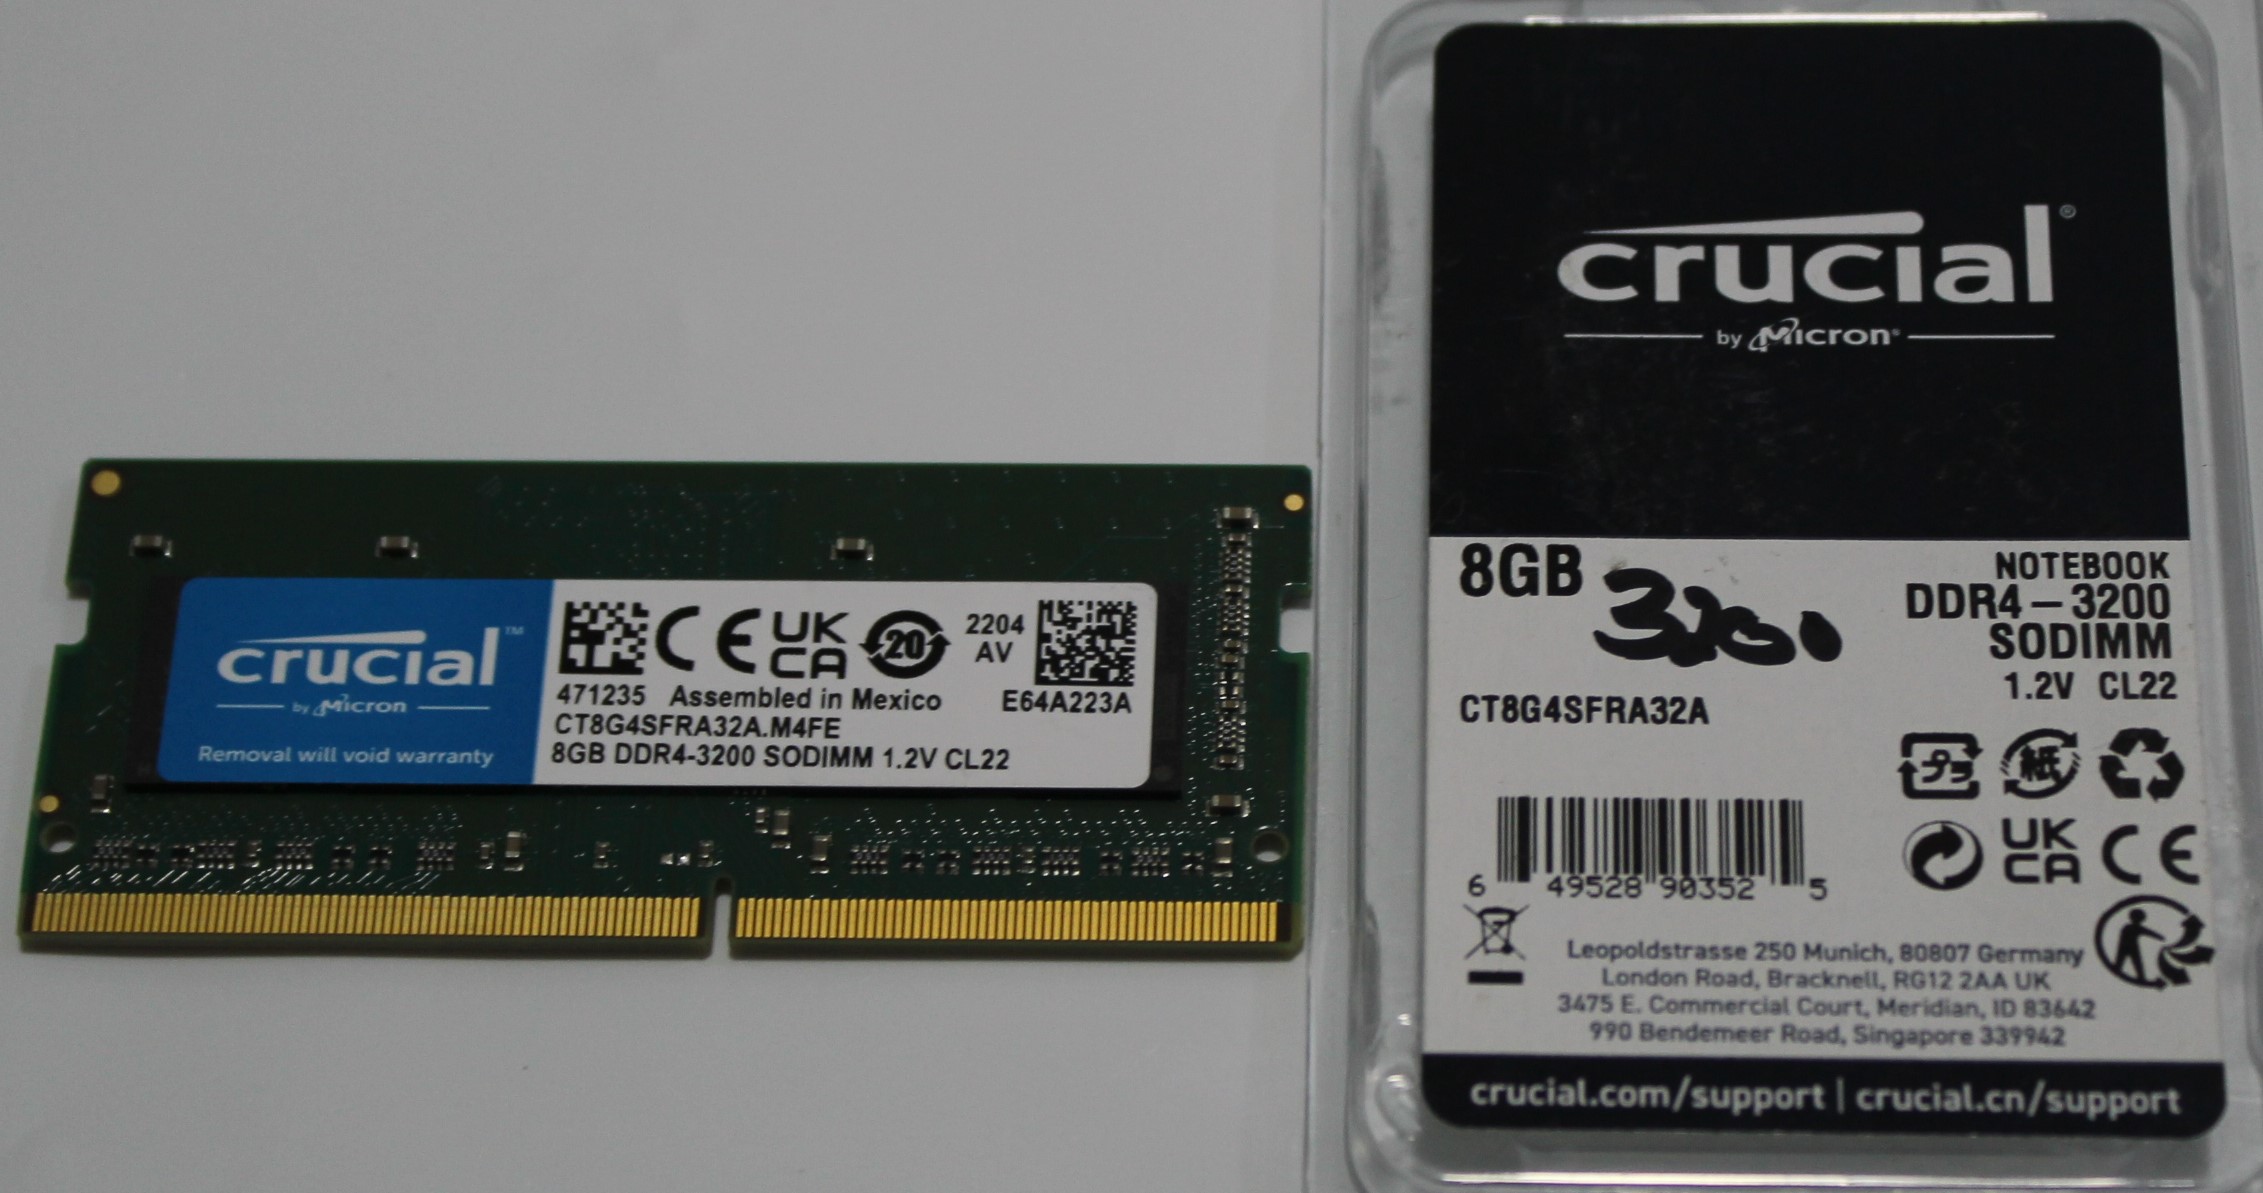 CT8GB43200 Crucial 8GB DDR4-3200 SODIMM – 5015817 » DG Help Services